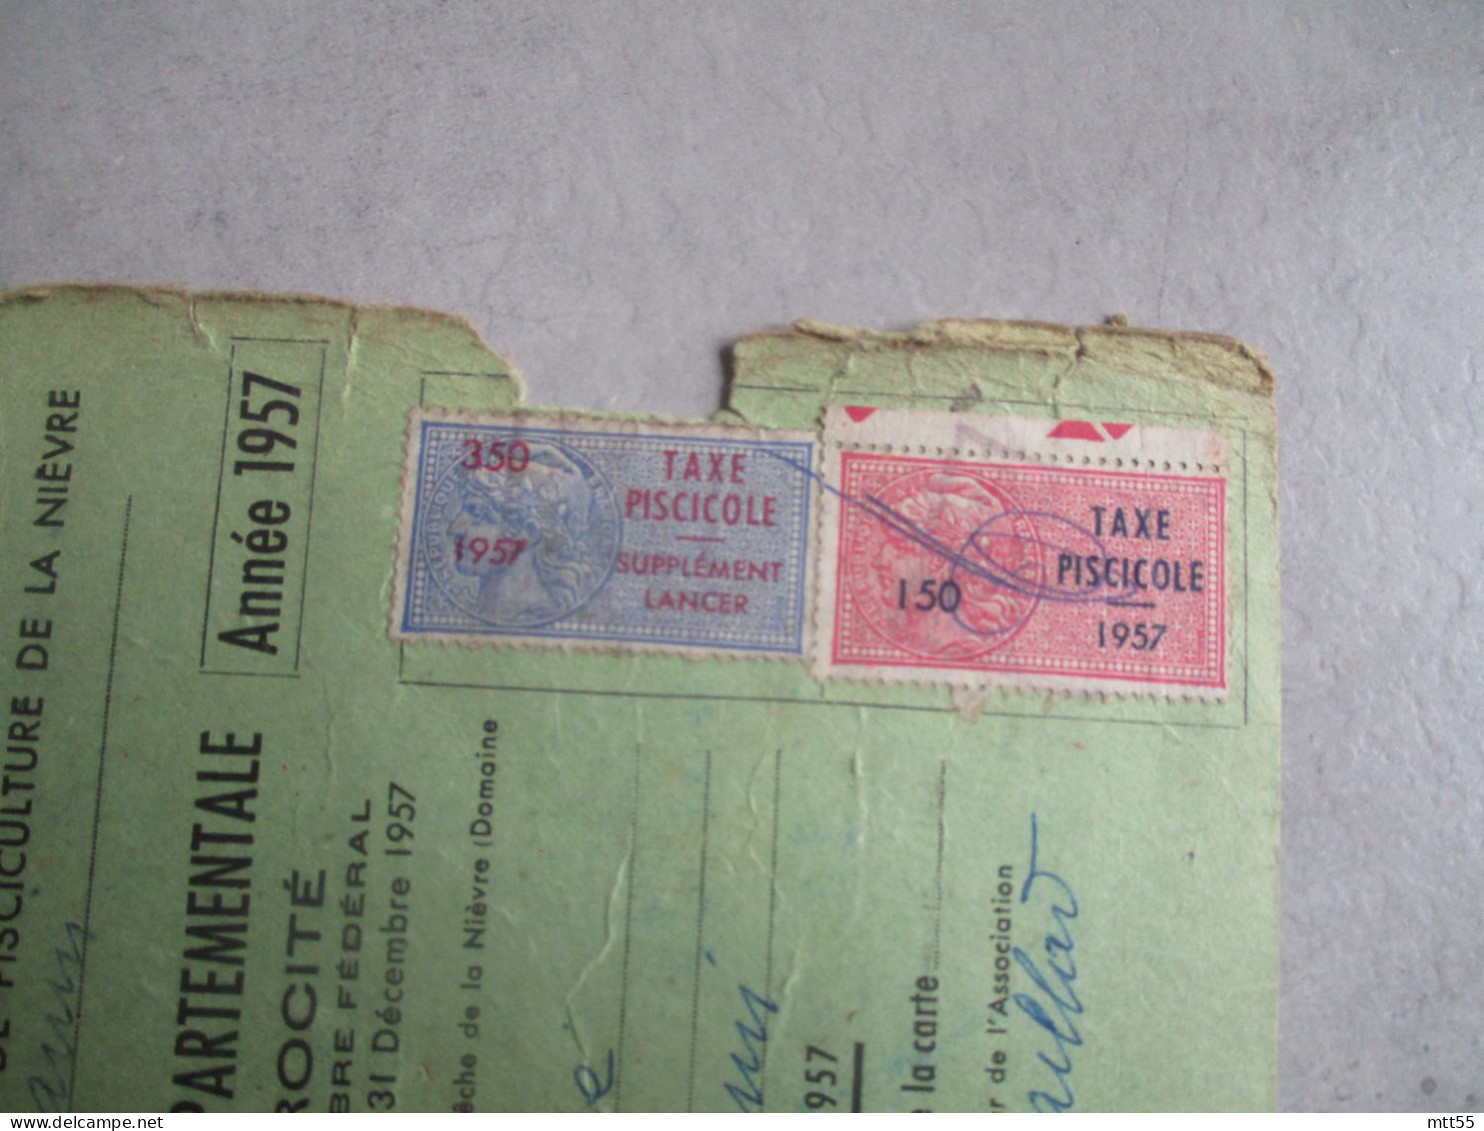 TAXE PISICOLE 1957 2 TIMBRE FISCAL FISCAUX SUR CARTE PECHE - Covers & Documents